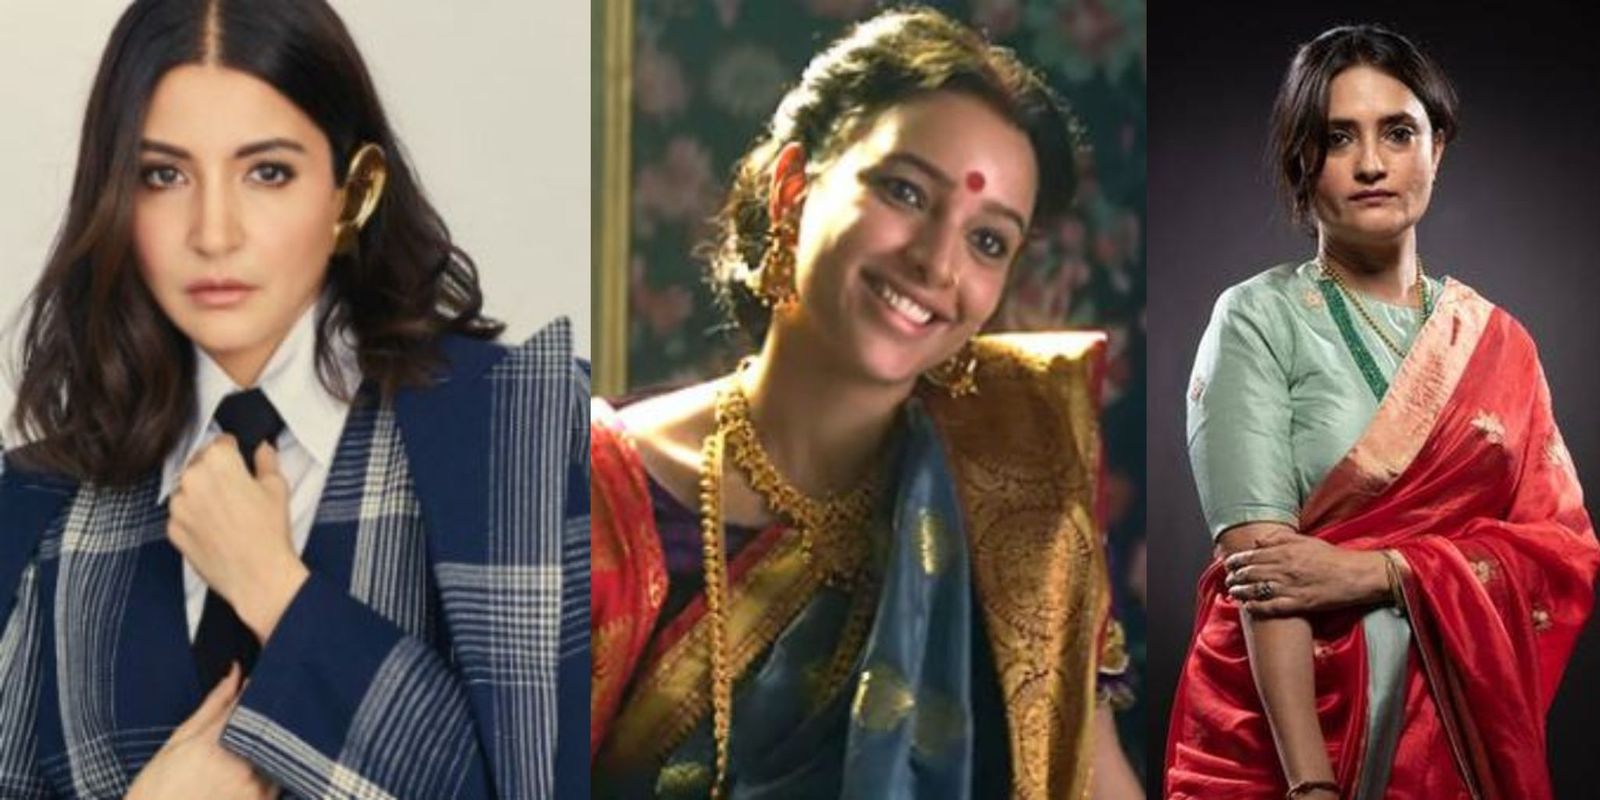 अनुष्का शर्मा फिल्म 'बुलबुल' स्टार तृप्ति डिमरी के साथ फिर करेंगी काम, अन्विता दत्त करेंगी डायरेक्टर 